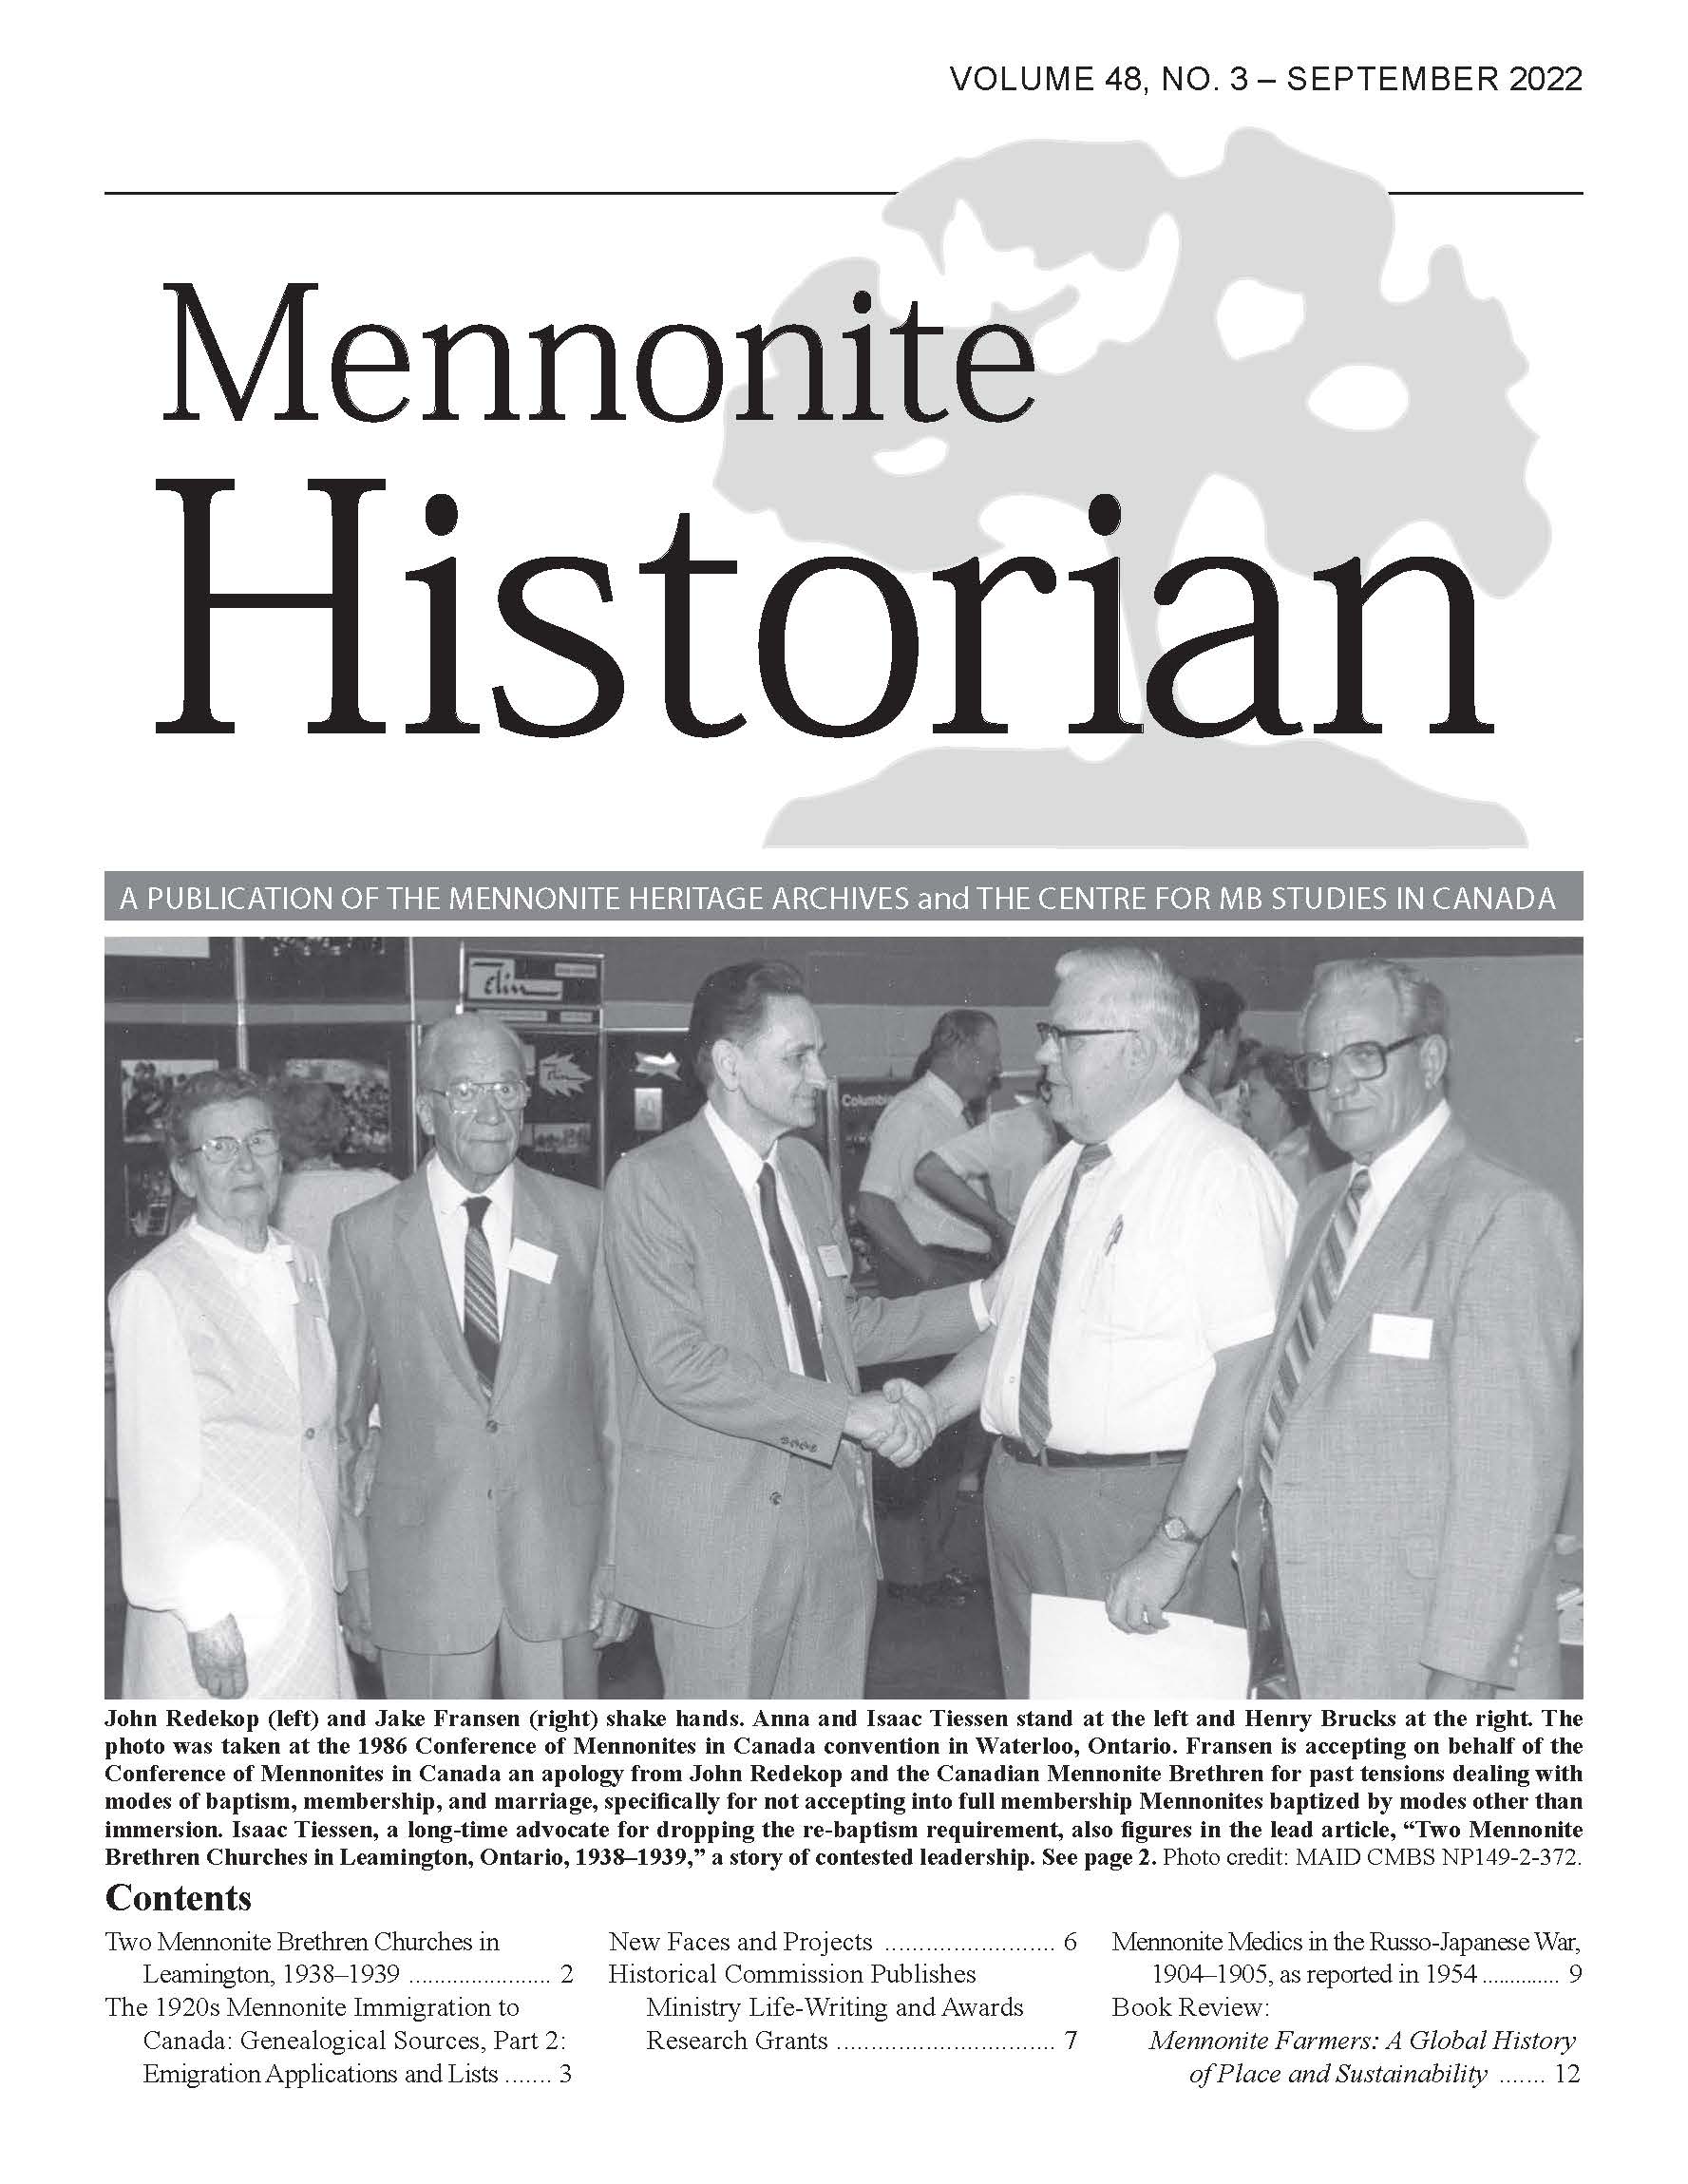 Mennonite Historian (Sep. 2022)